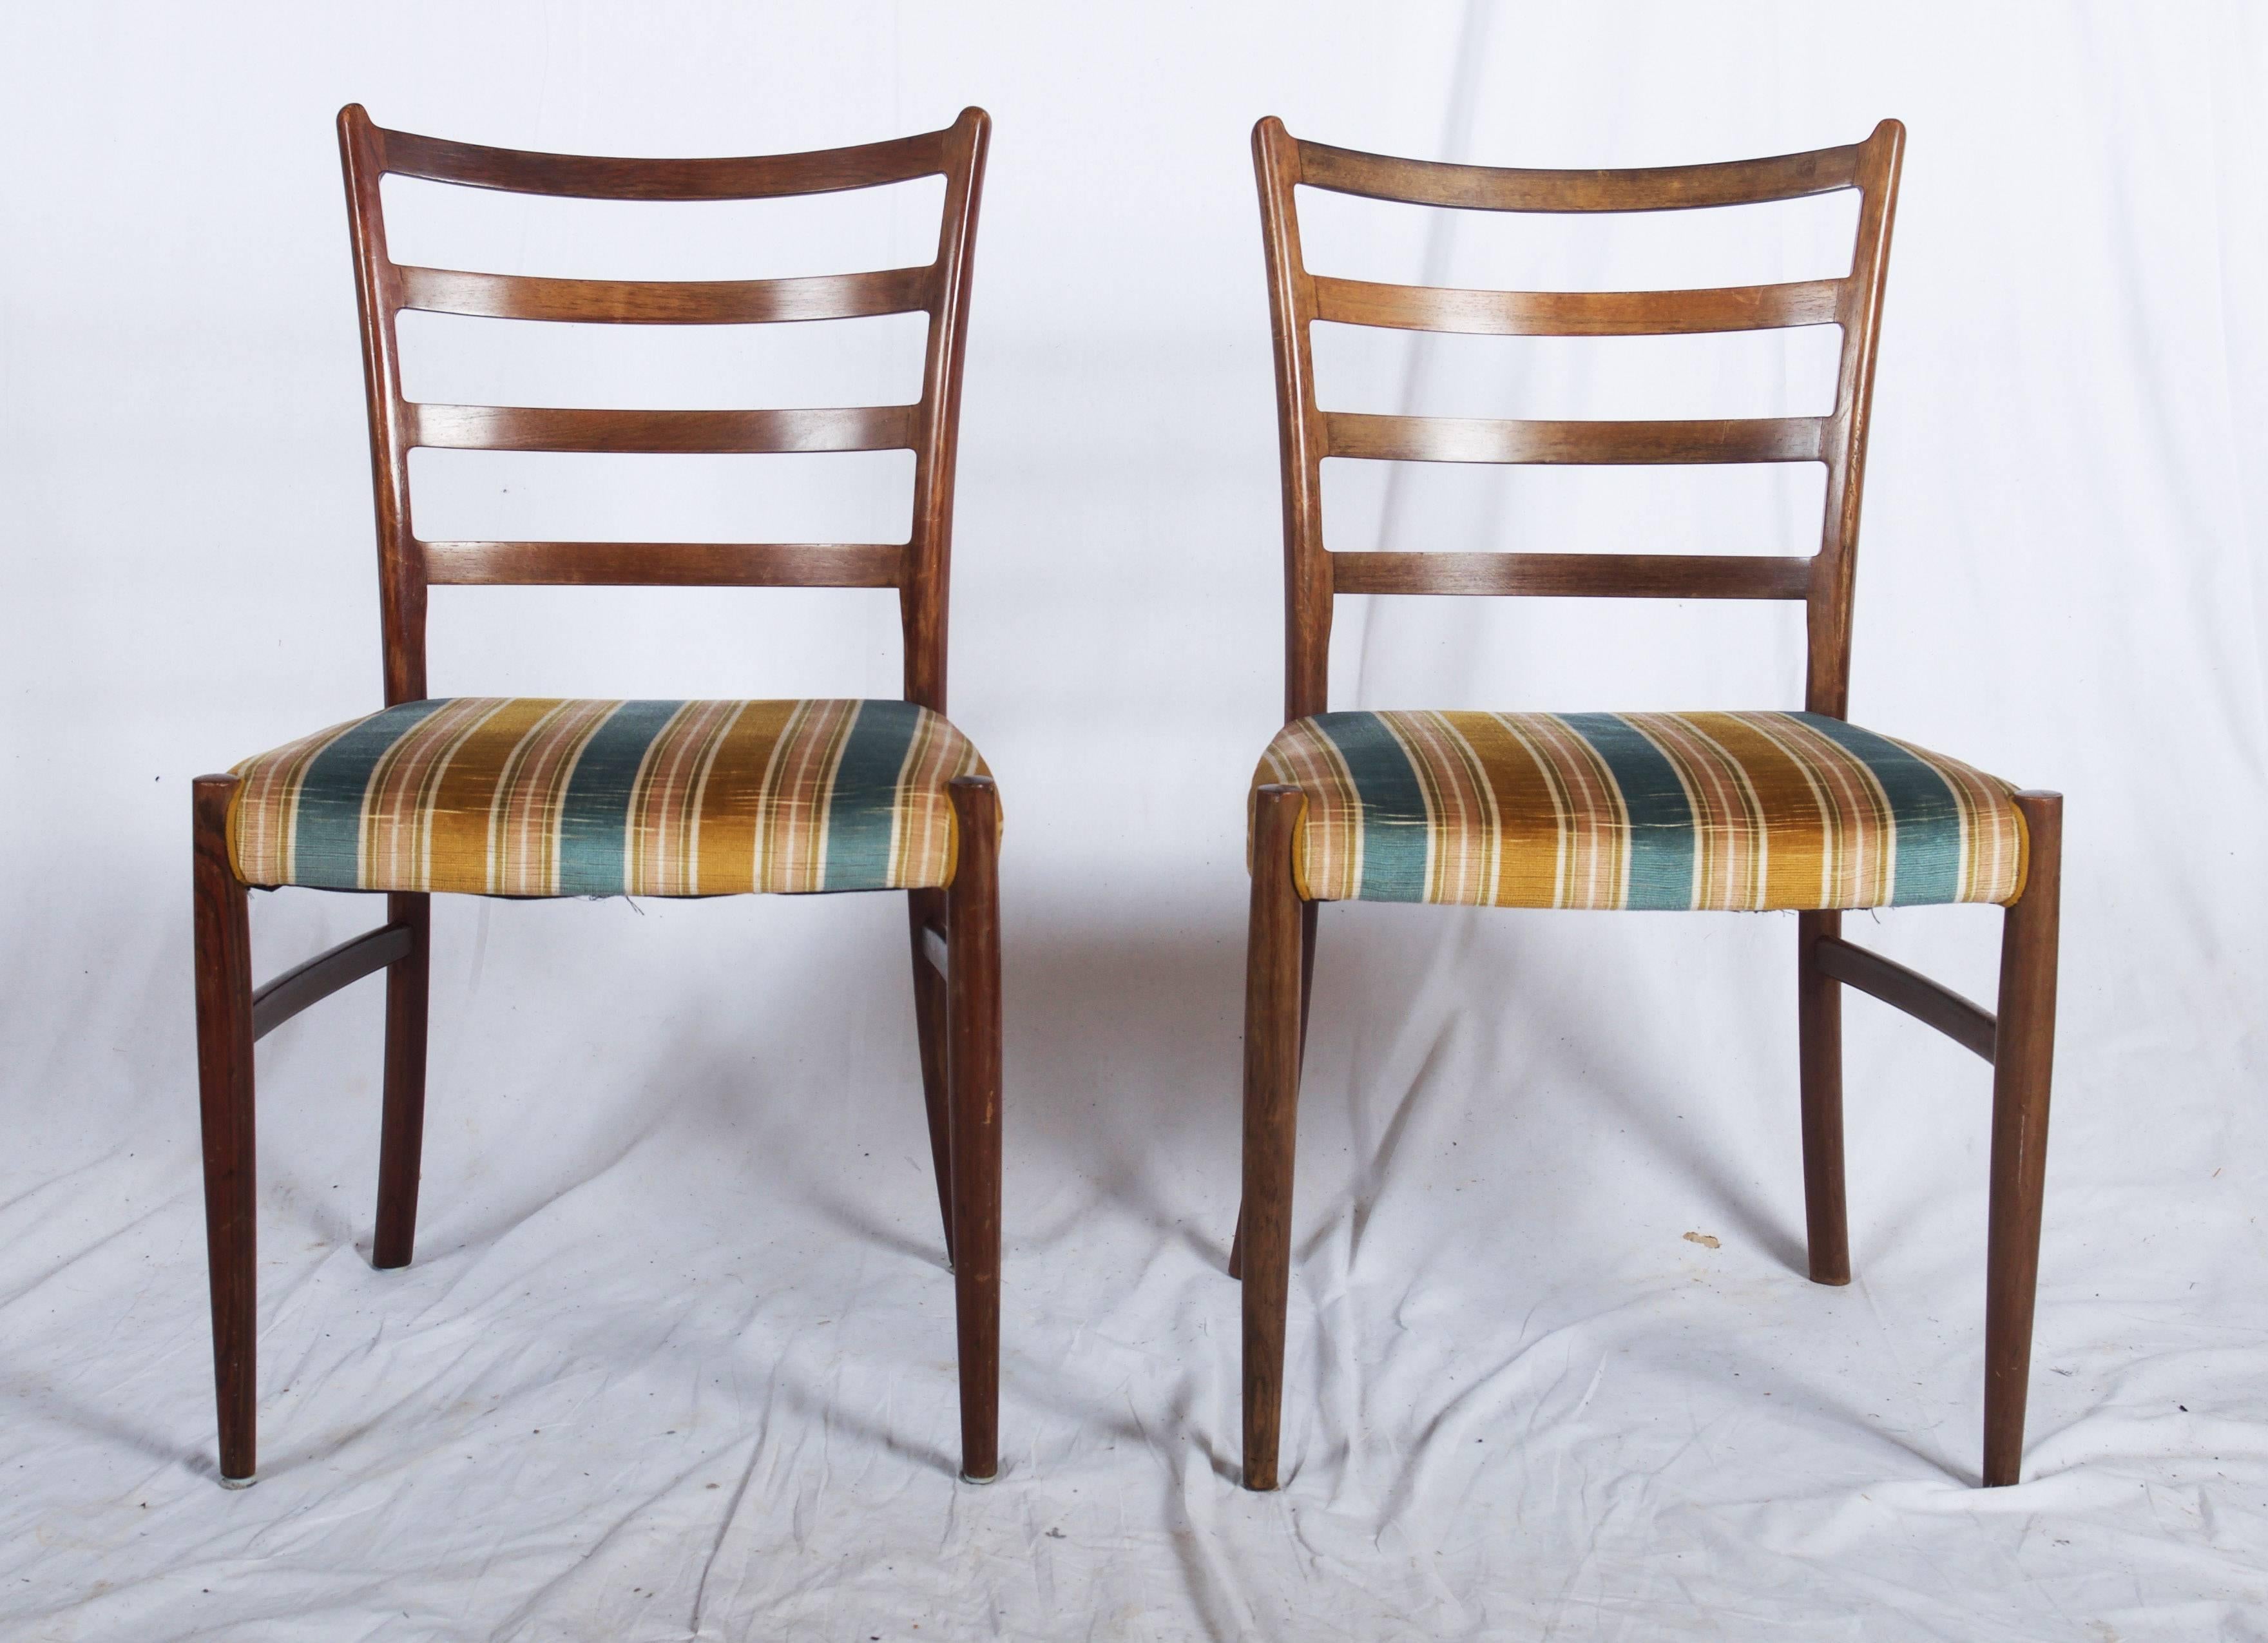 Un ensemble de quatre chaises de salle à manger conçu par Johannes Andersen et produit par SVA Møbler, Danemark, vers 1960, en bois dur massif. Ces chaises sont toutes en excellent état et le bois dur d'une chaude couleur miel.
Ou sur demande nous